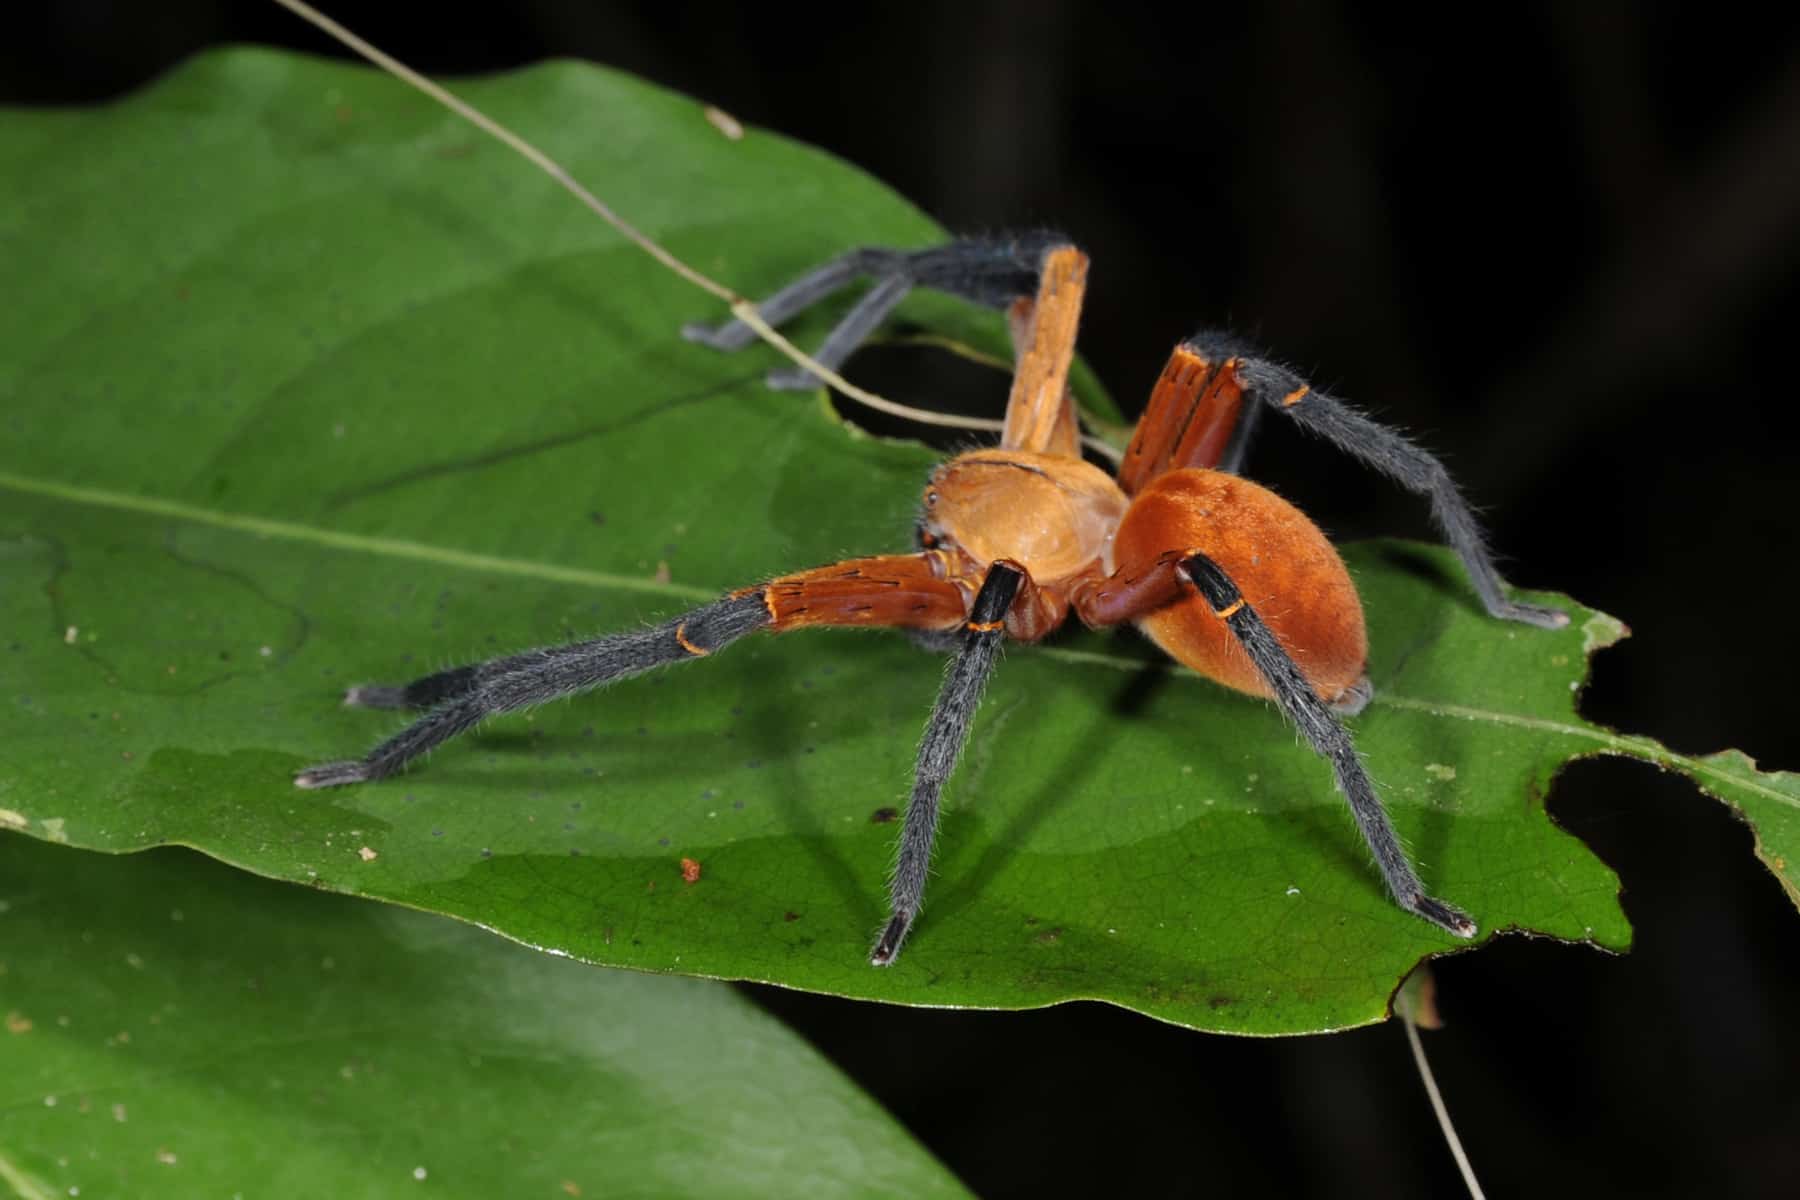 Unknown orange Spider